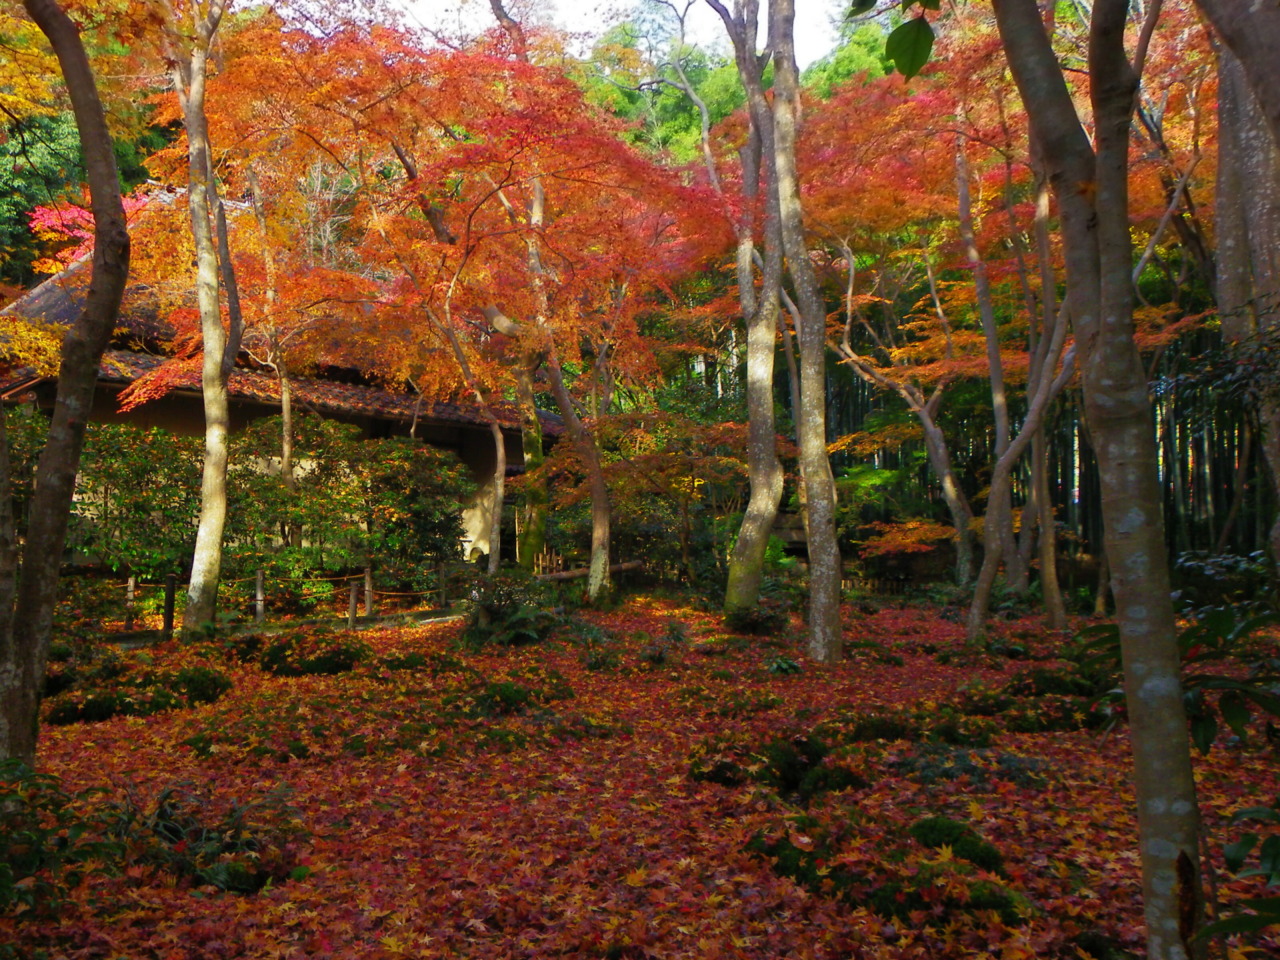 京都一天行程: 嵐山紅葉遊